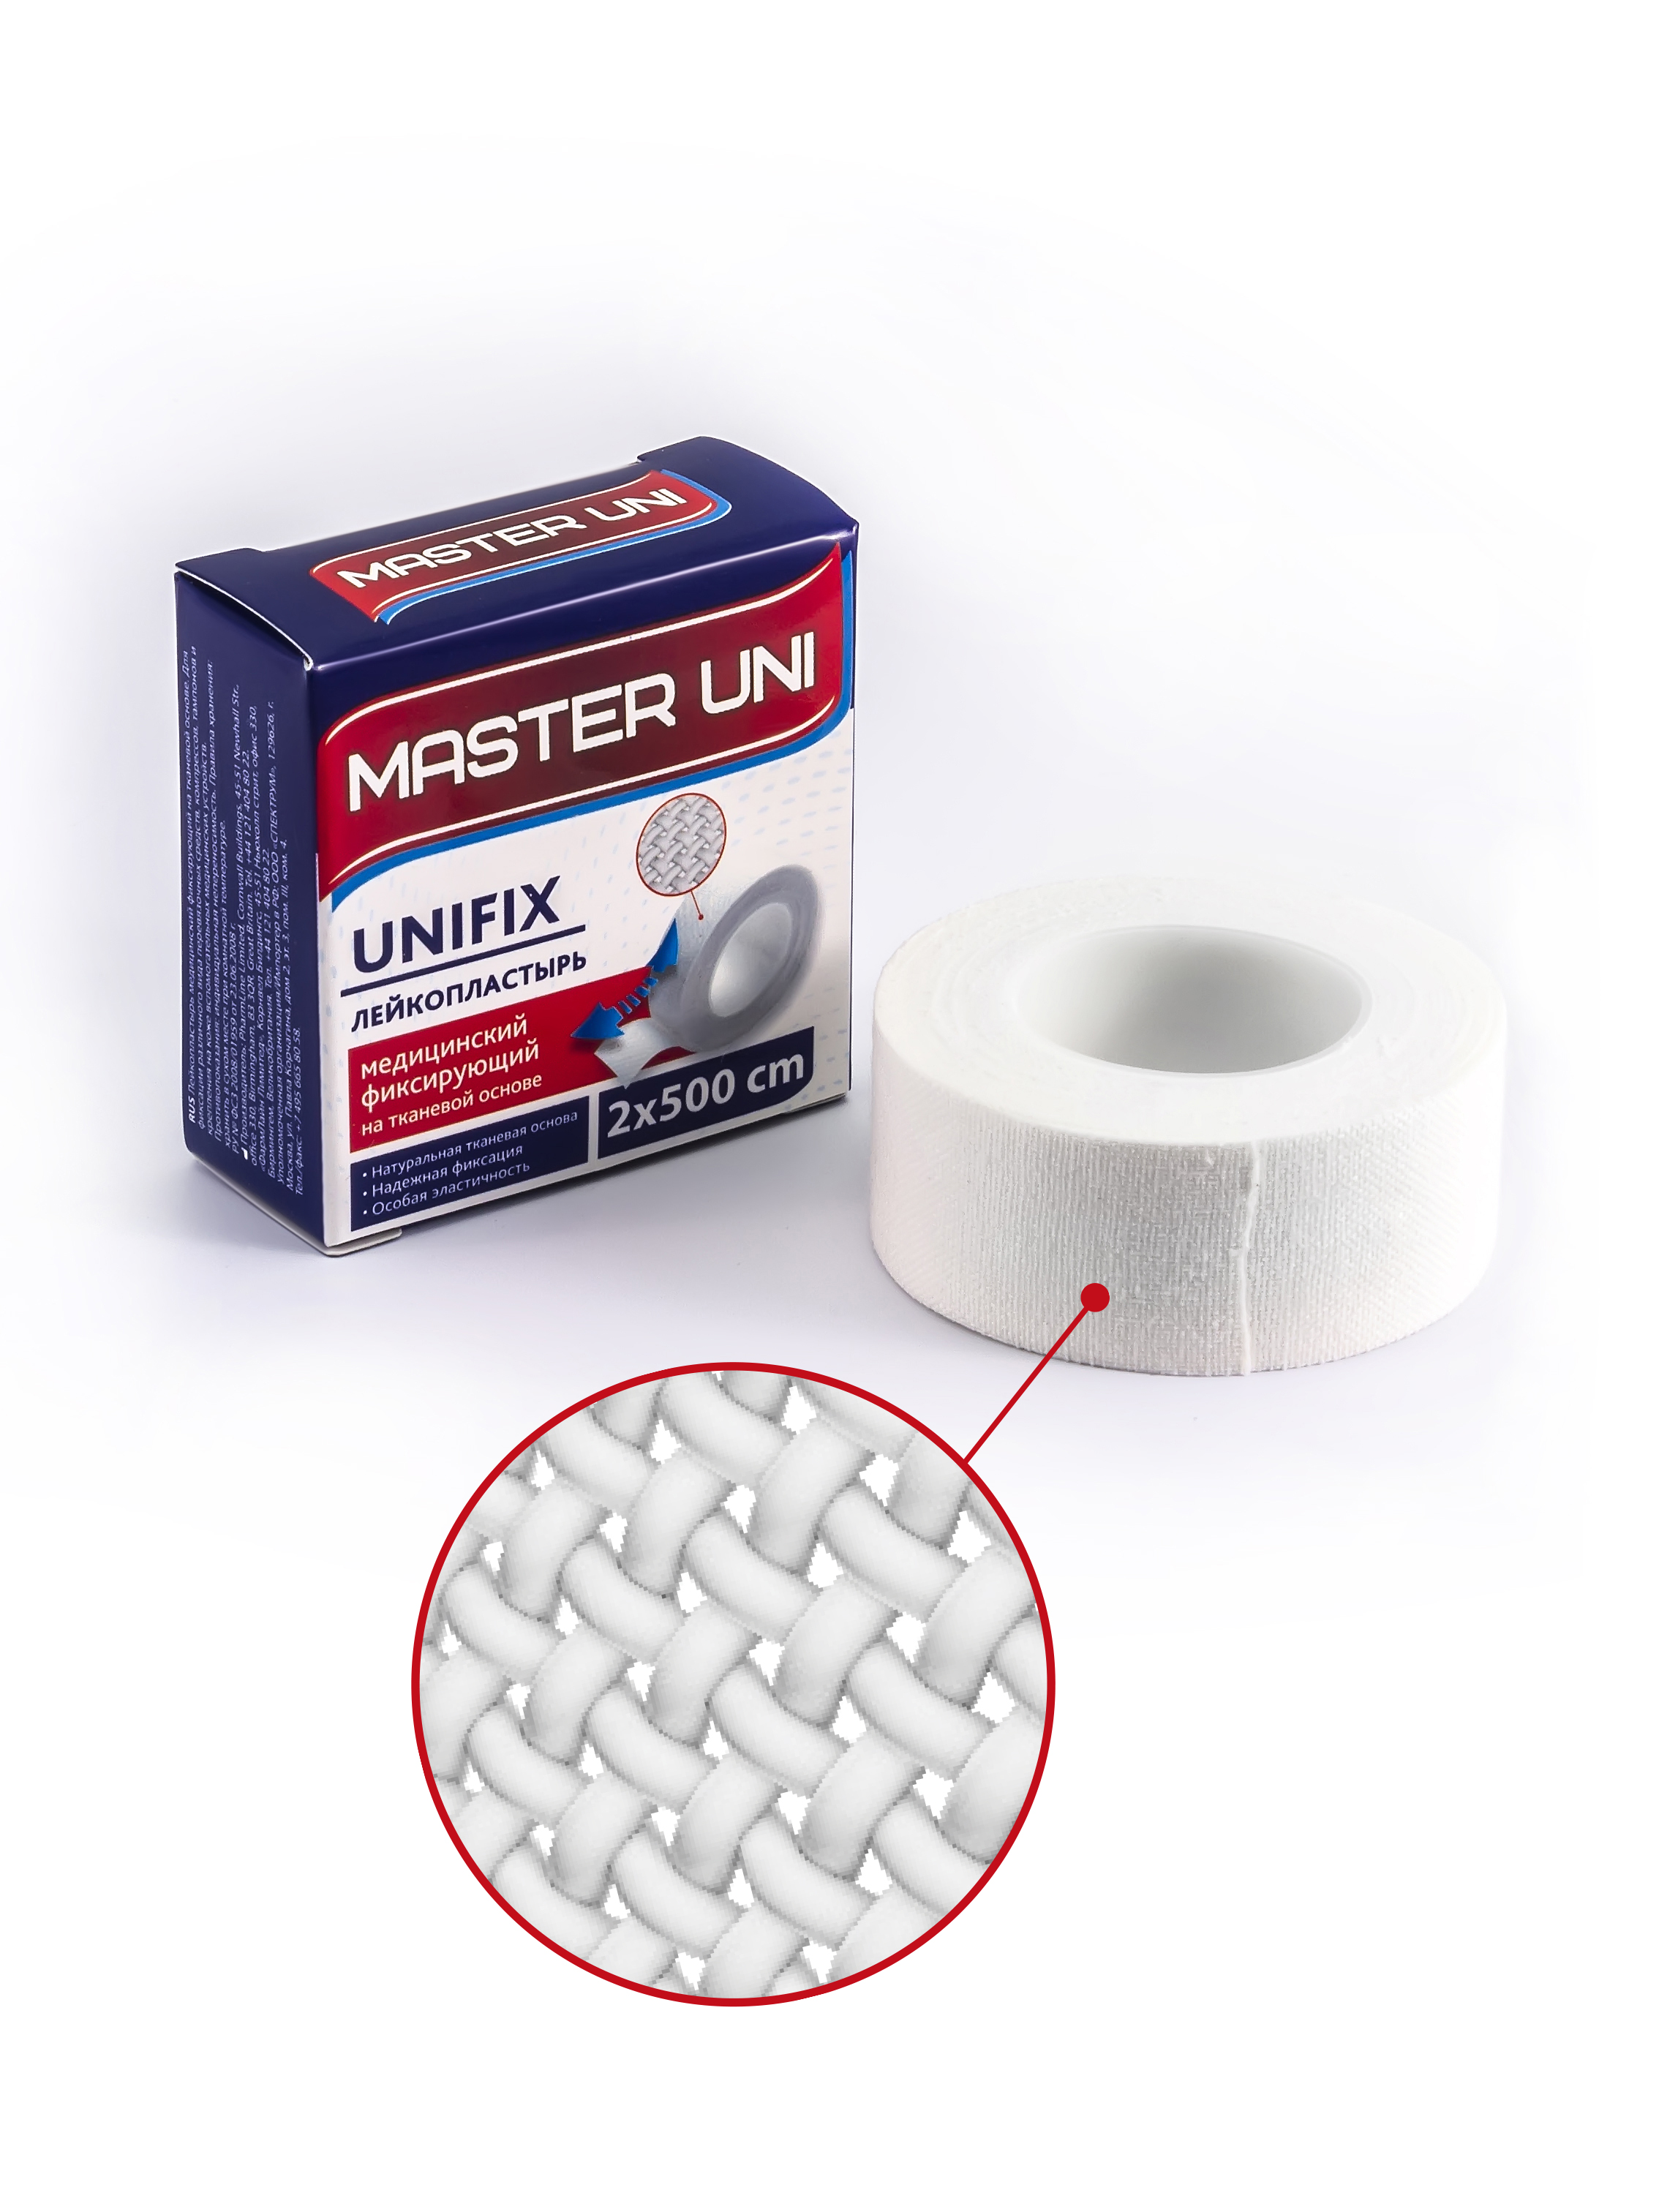 Купить MASTER UNI UNIFIX Лейкопластырь 2 х 500 см на тканевой основе, Пластырь Master Uni Unifix фиксирующий на тканевой основе 2 х 500 см, белый